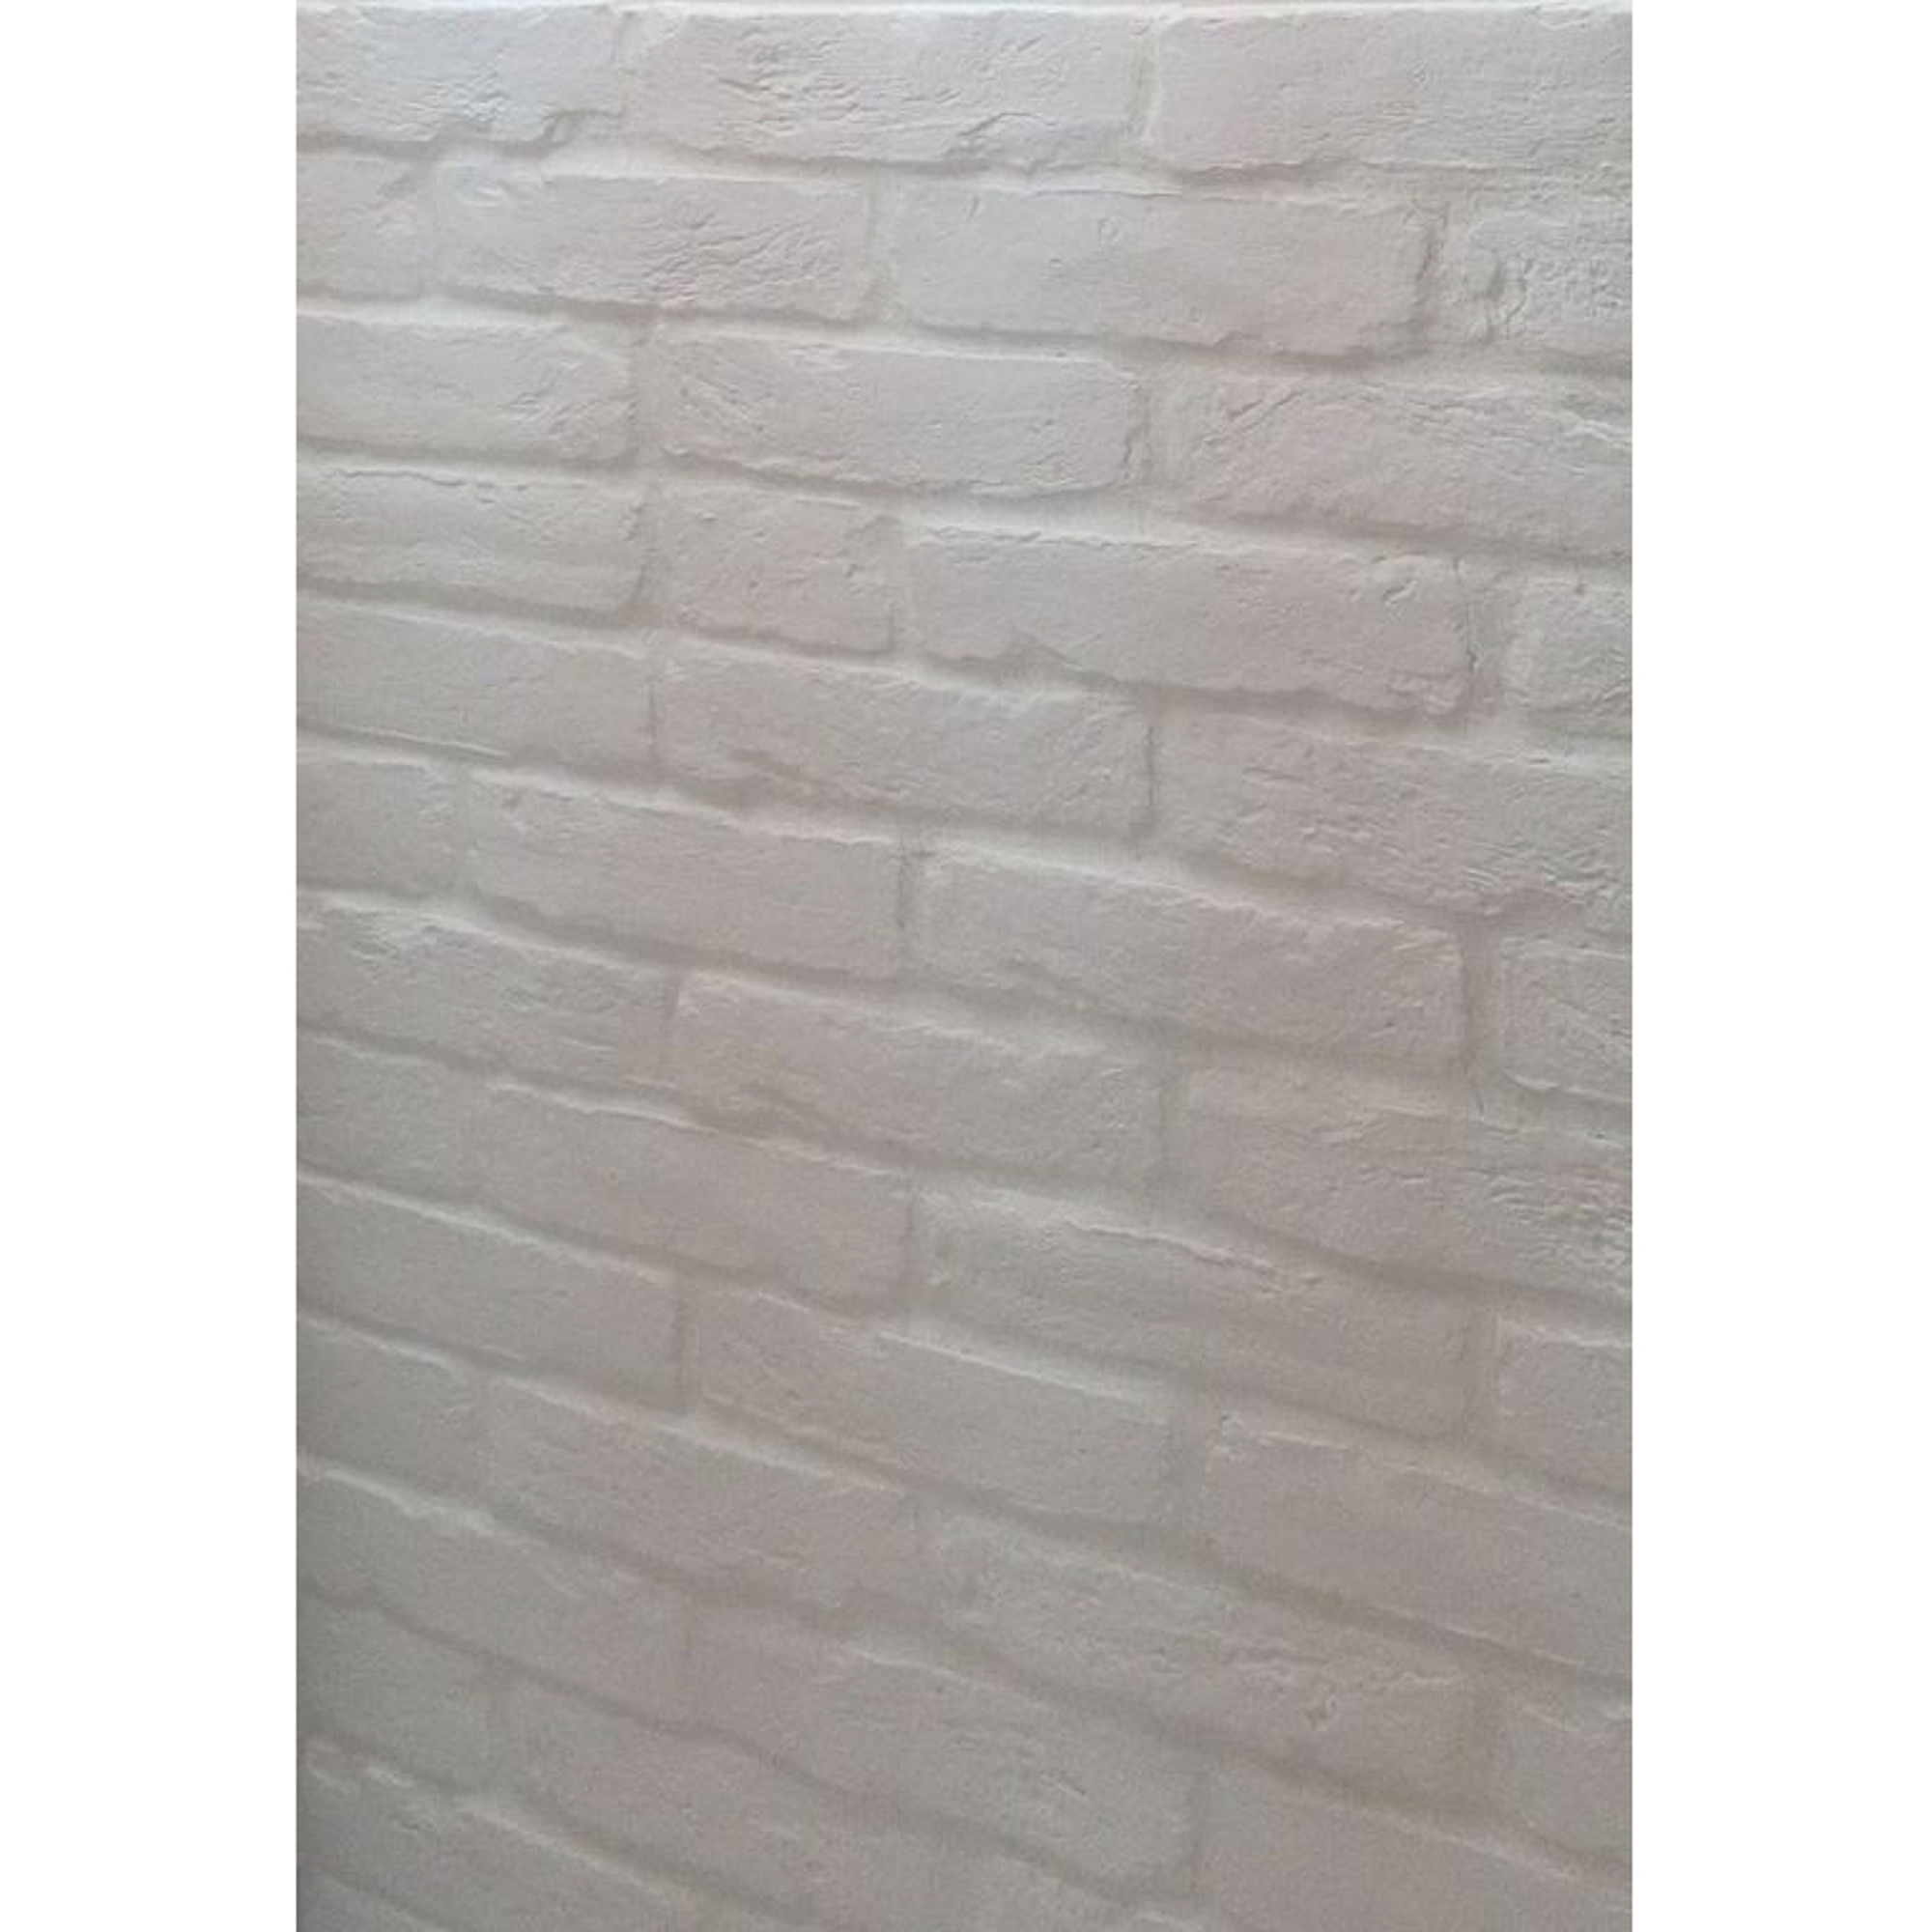 фото Плитка керамика императорский кирпич белый тычок 12,8х7,6 см keramika